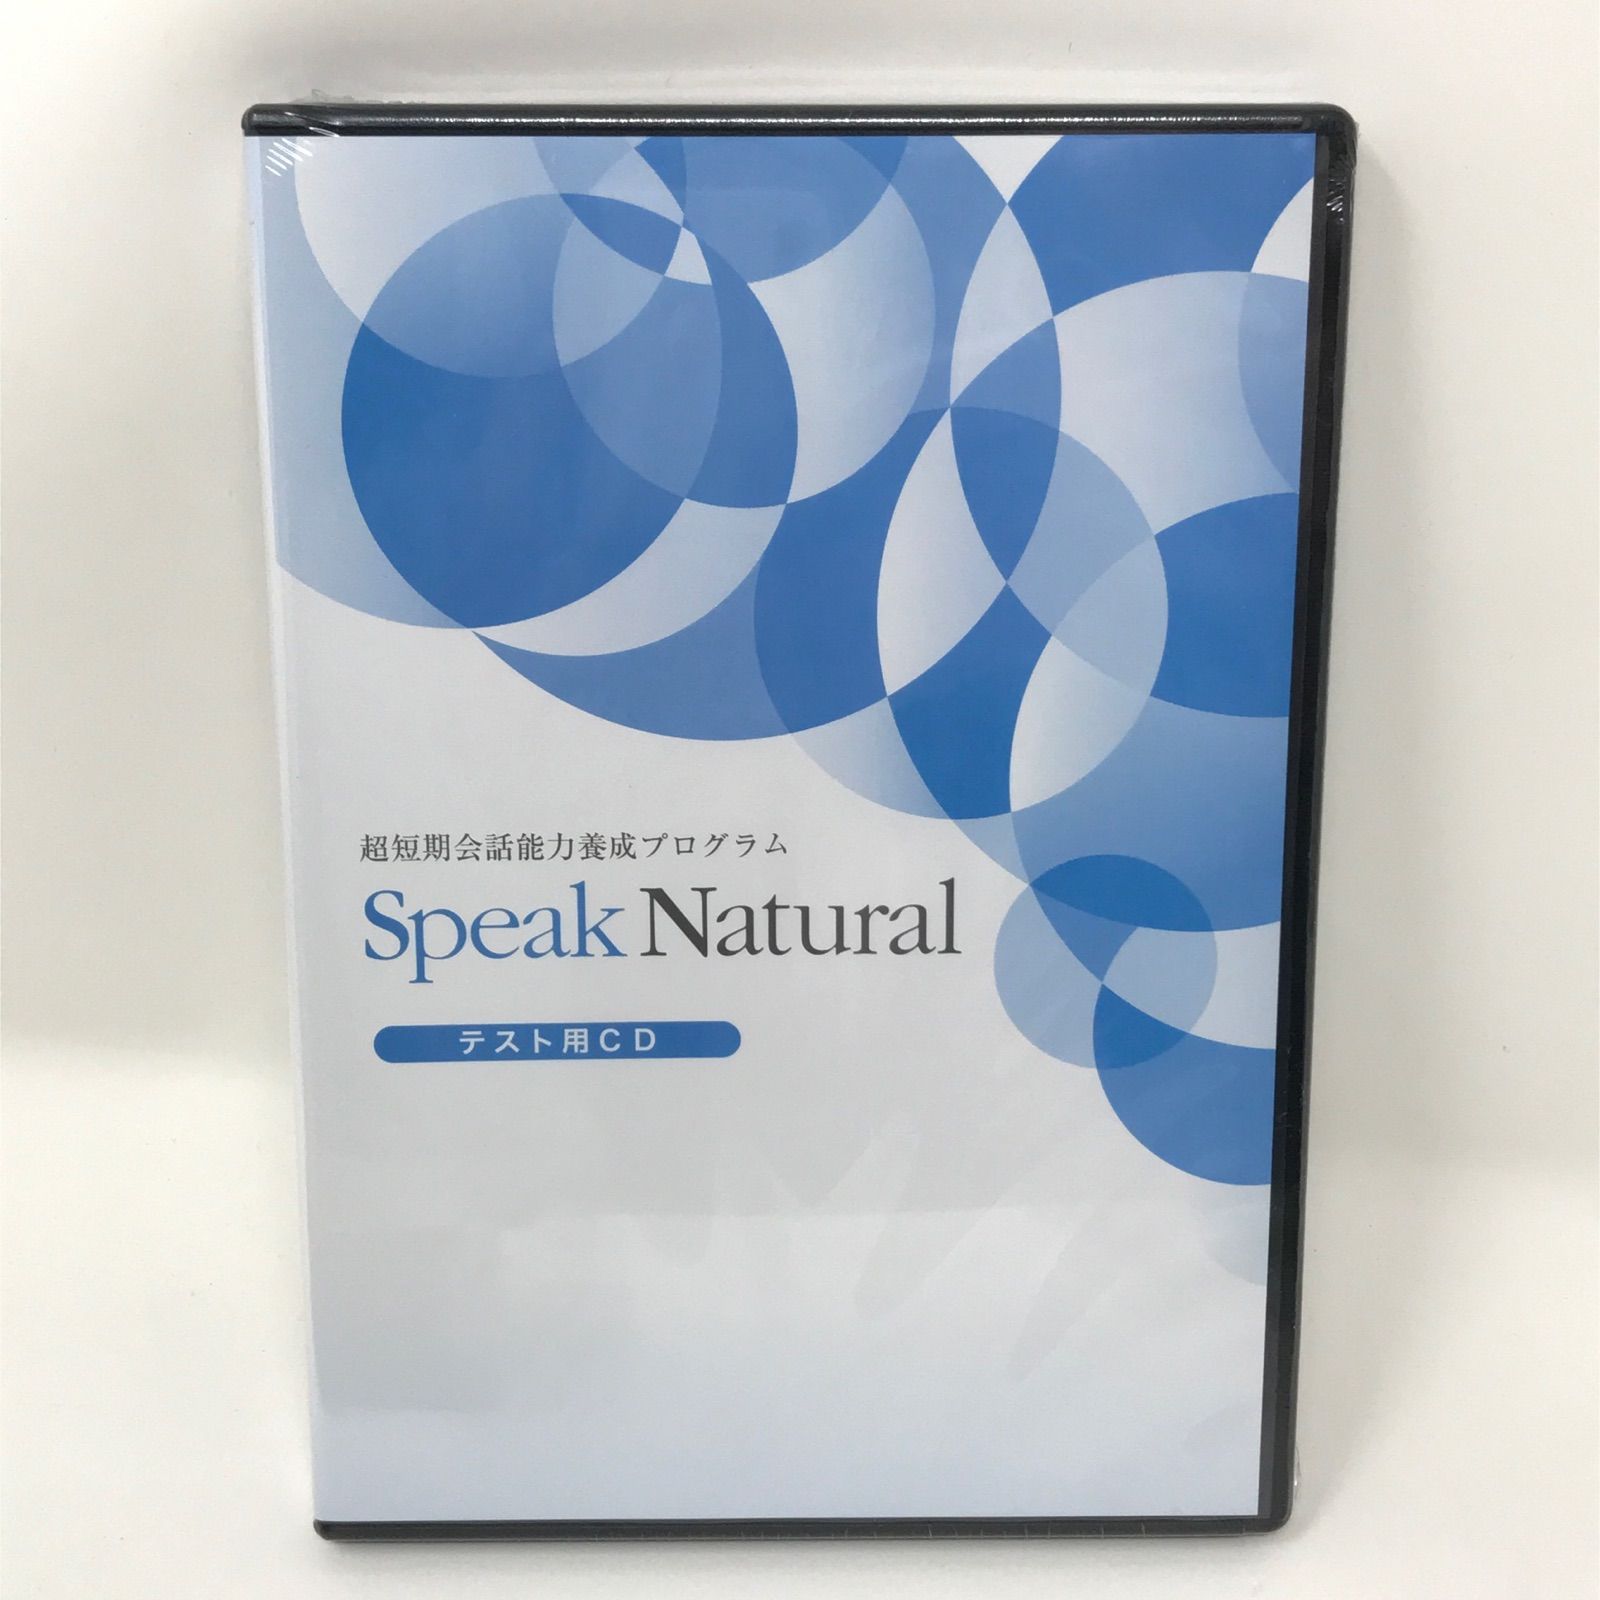 英会話教材 Speak Natural スピークナチュラル テキスト CD